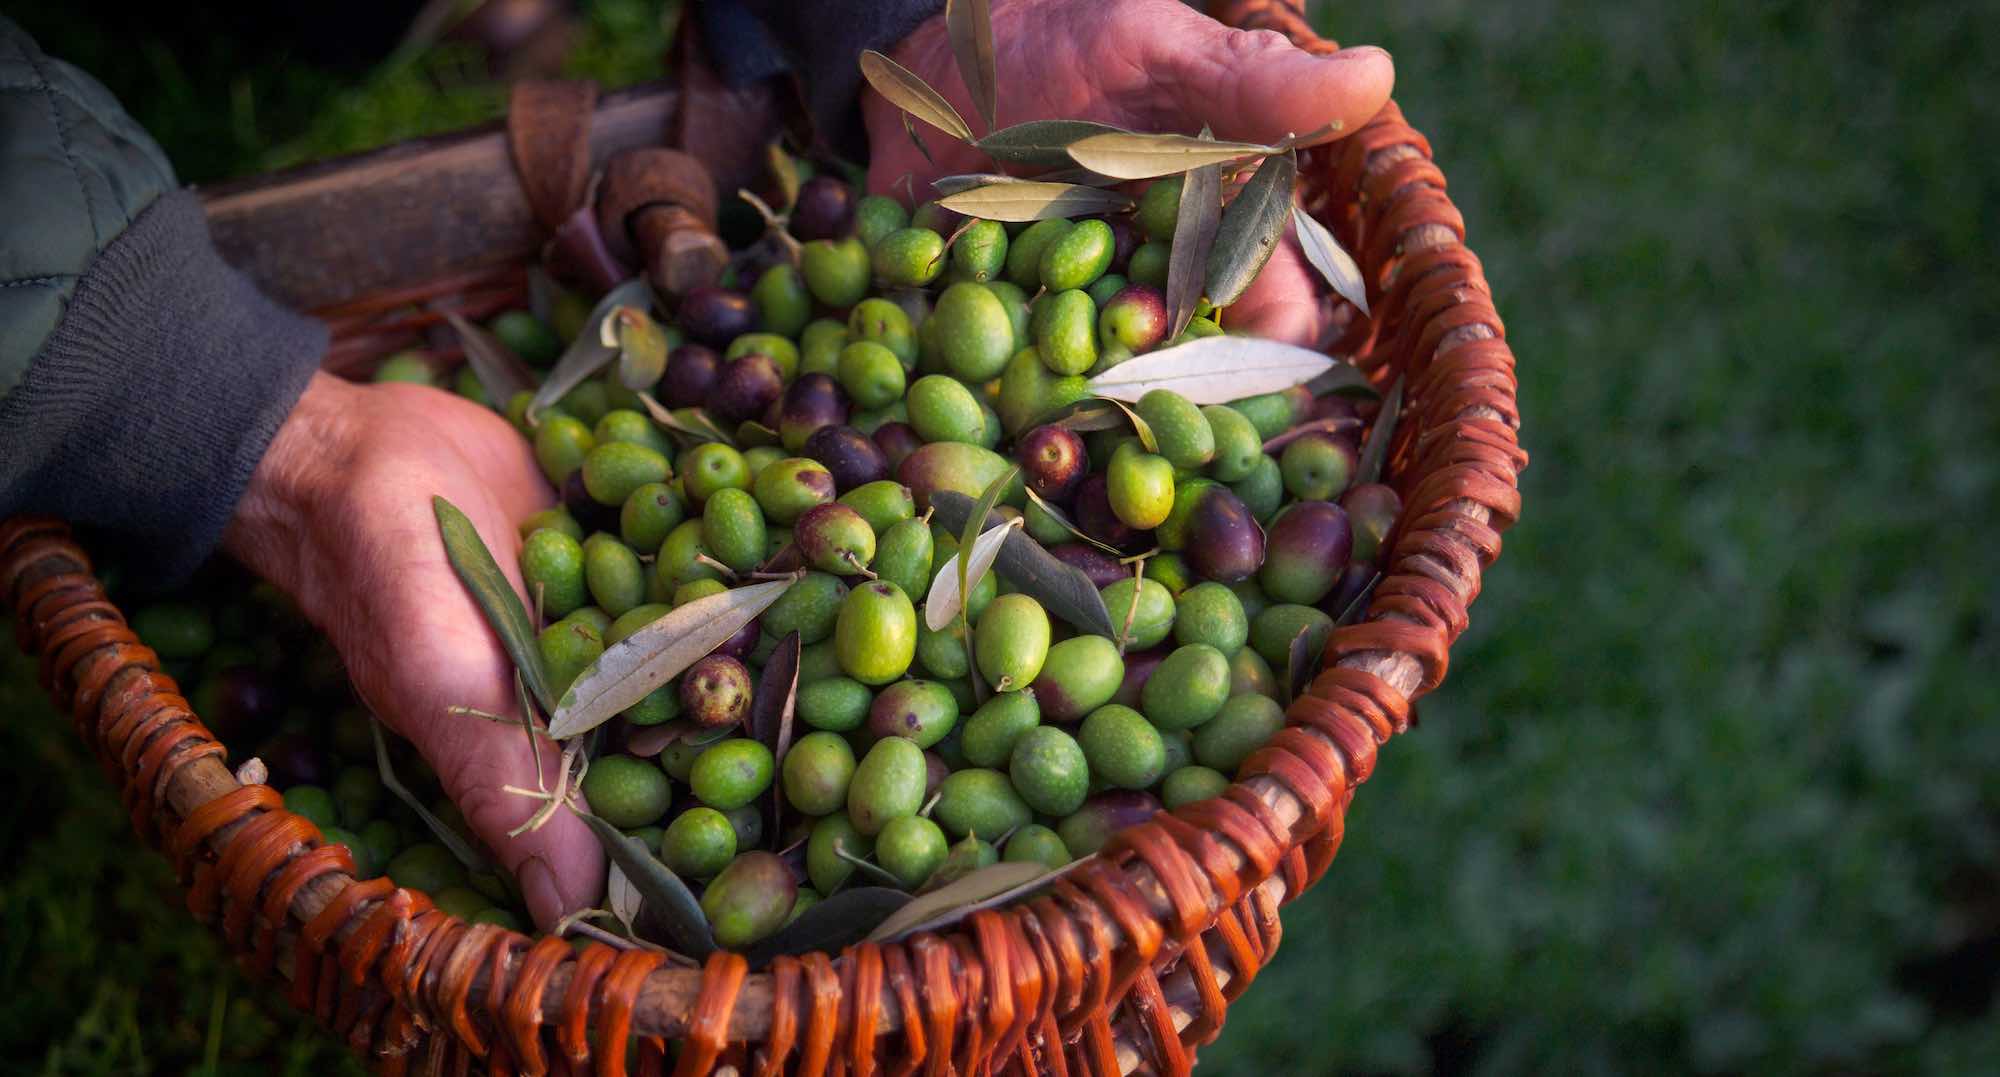 Agricoltore toscano mostra le olive raccolte in un cesto